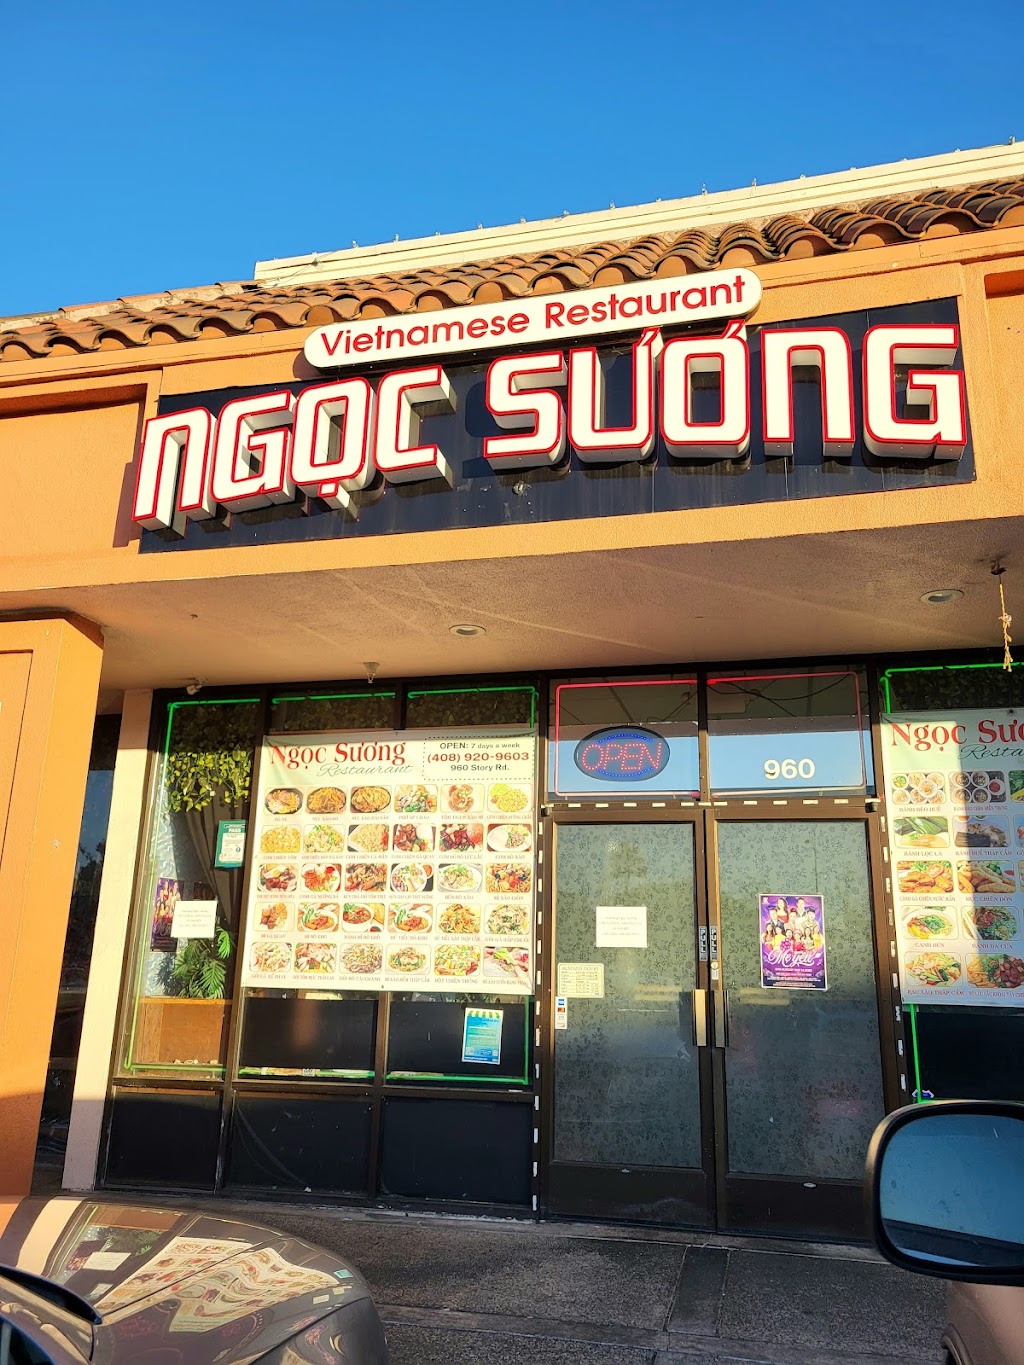 Ngoc Suong | 960 Story Rd, San Jose, CA 95122 | Phone: (408) 920-9603